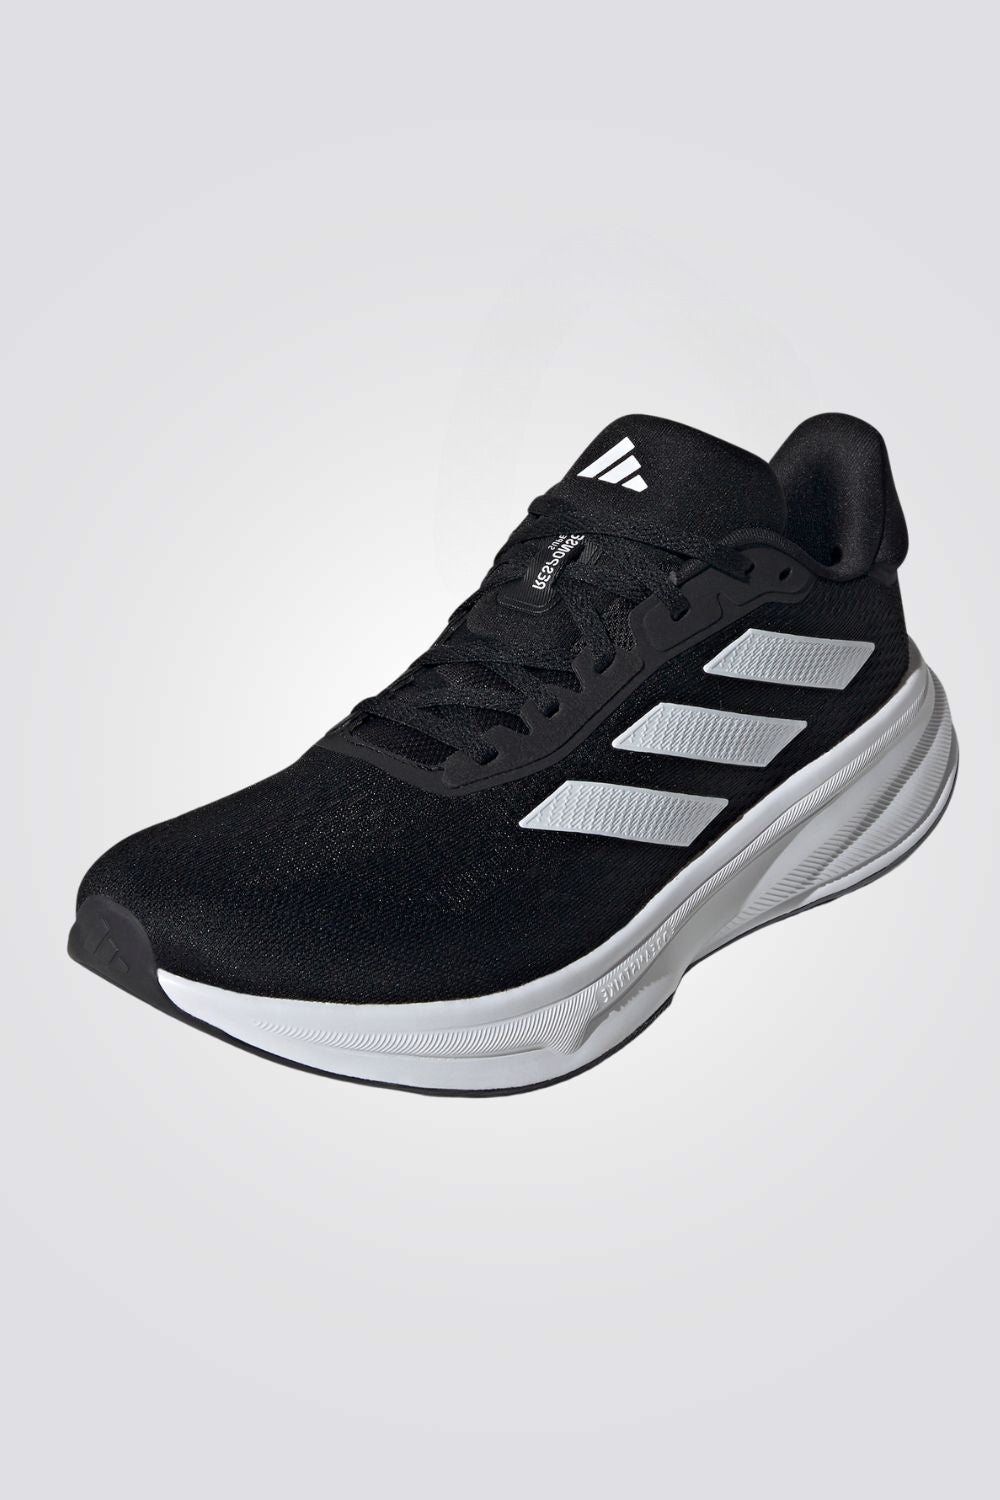 נעלי ספורט לגברים RESPONSE SUPER בצבע שחור ולבן